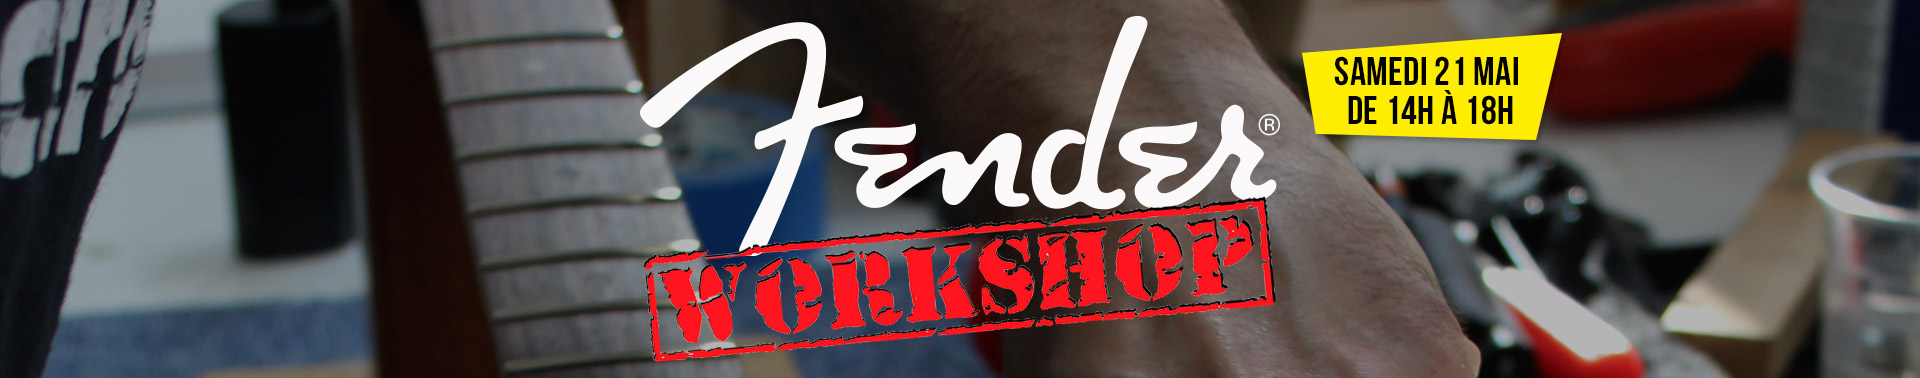 Banniere Fender Workshop